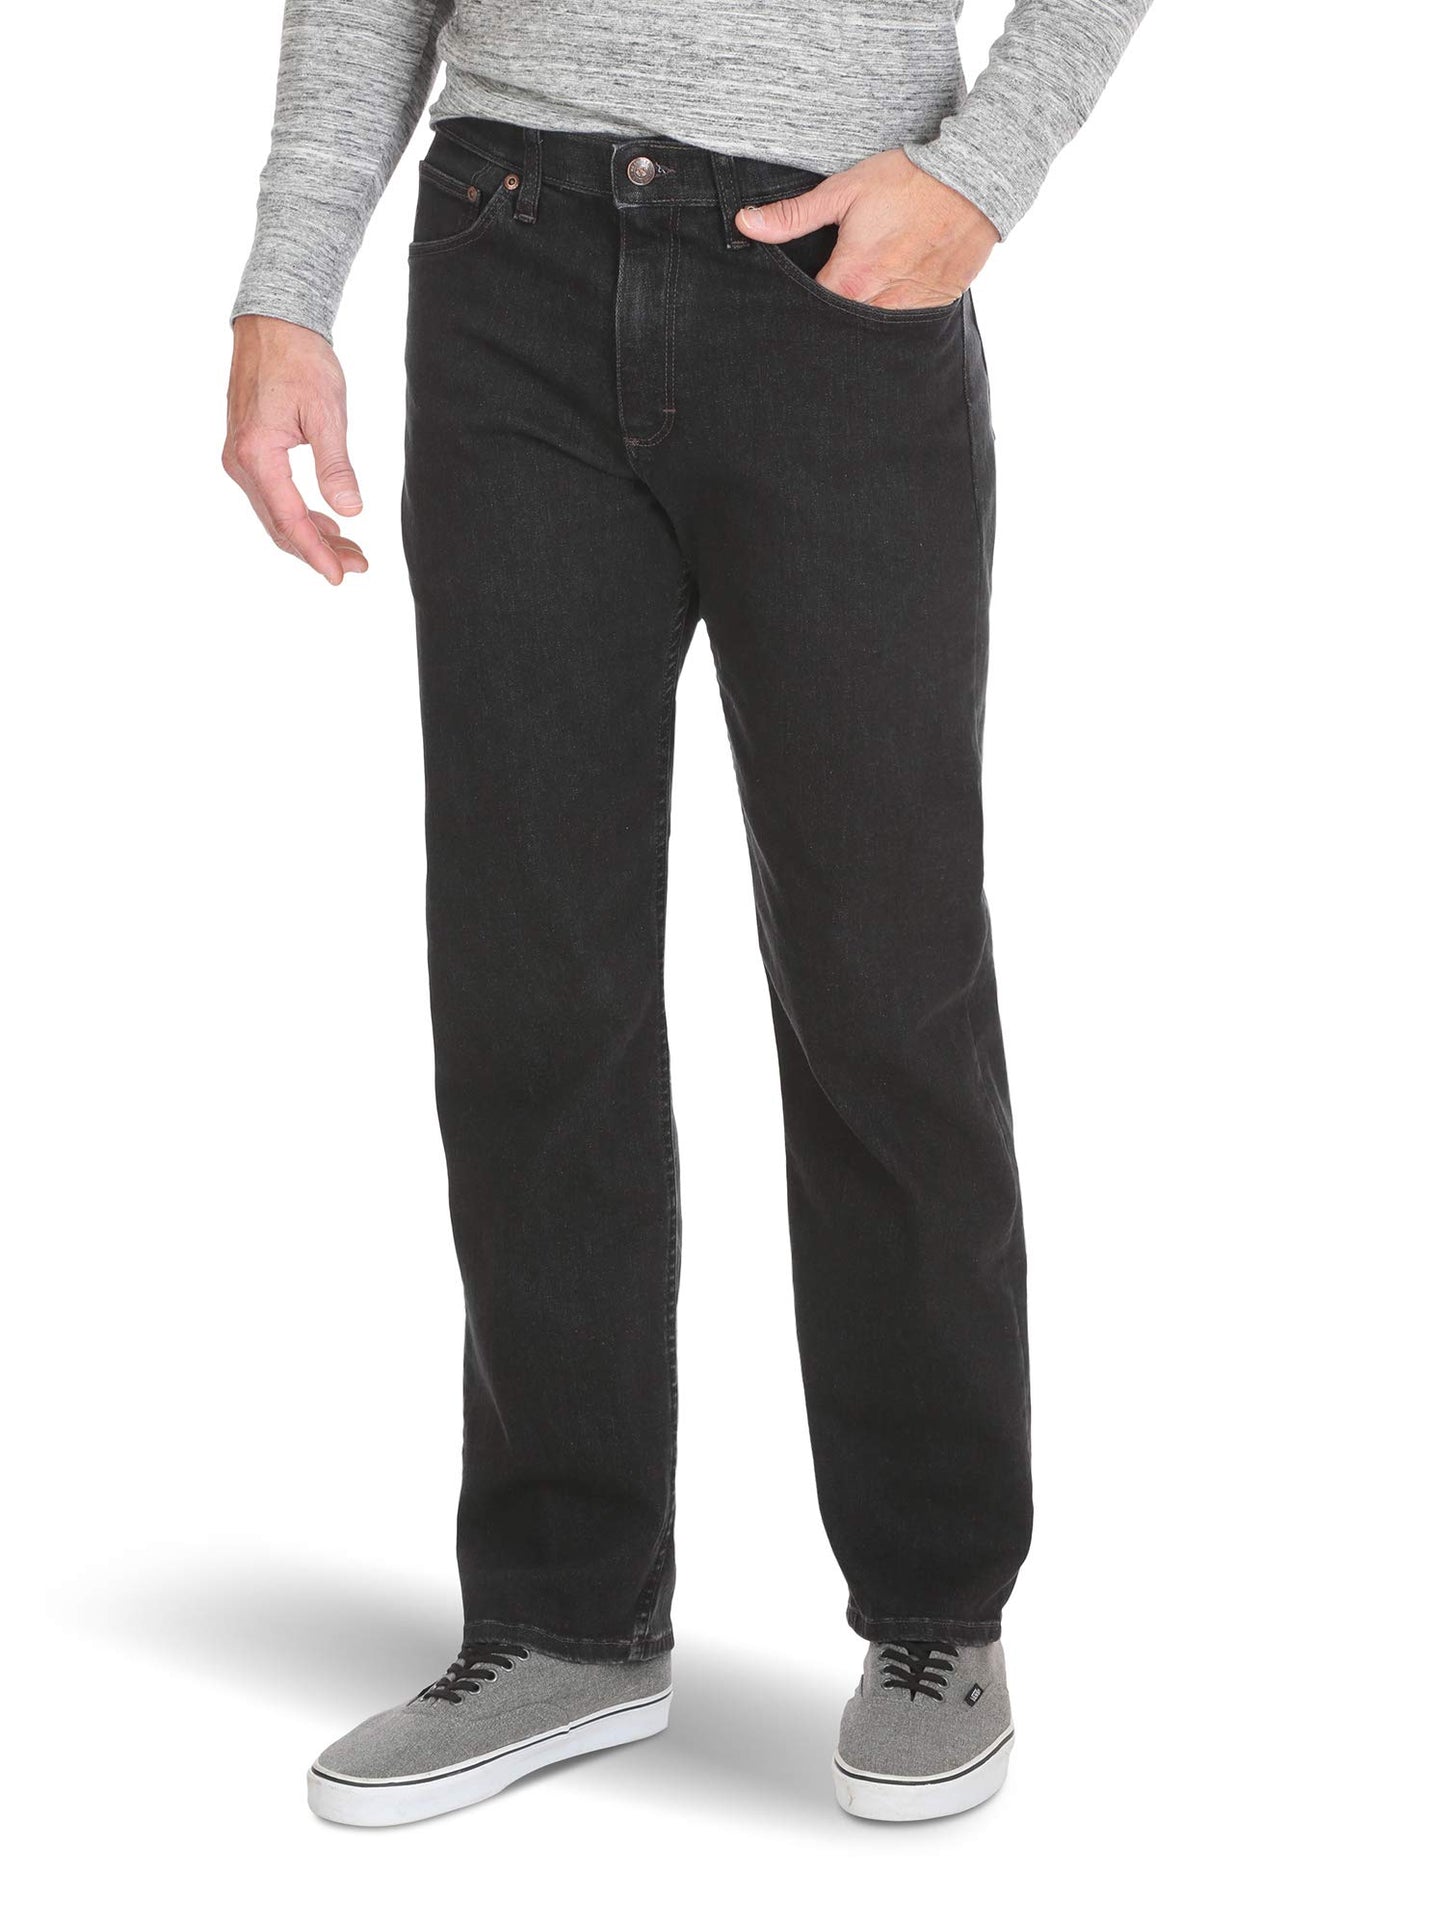 Wrangler Authentics Men's Big & Tall Comfort Flex Waist Relaxed Fit Jean, Dark Denim, 48W X 32L